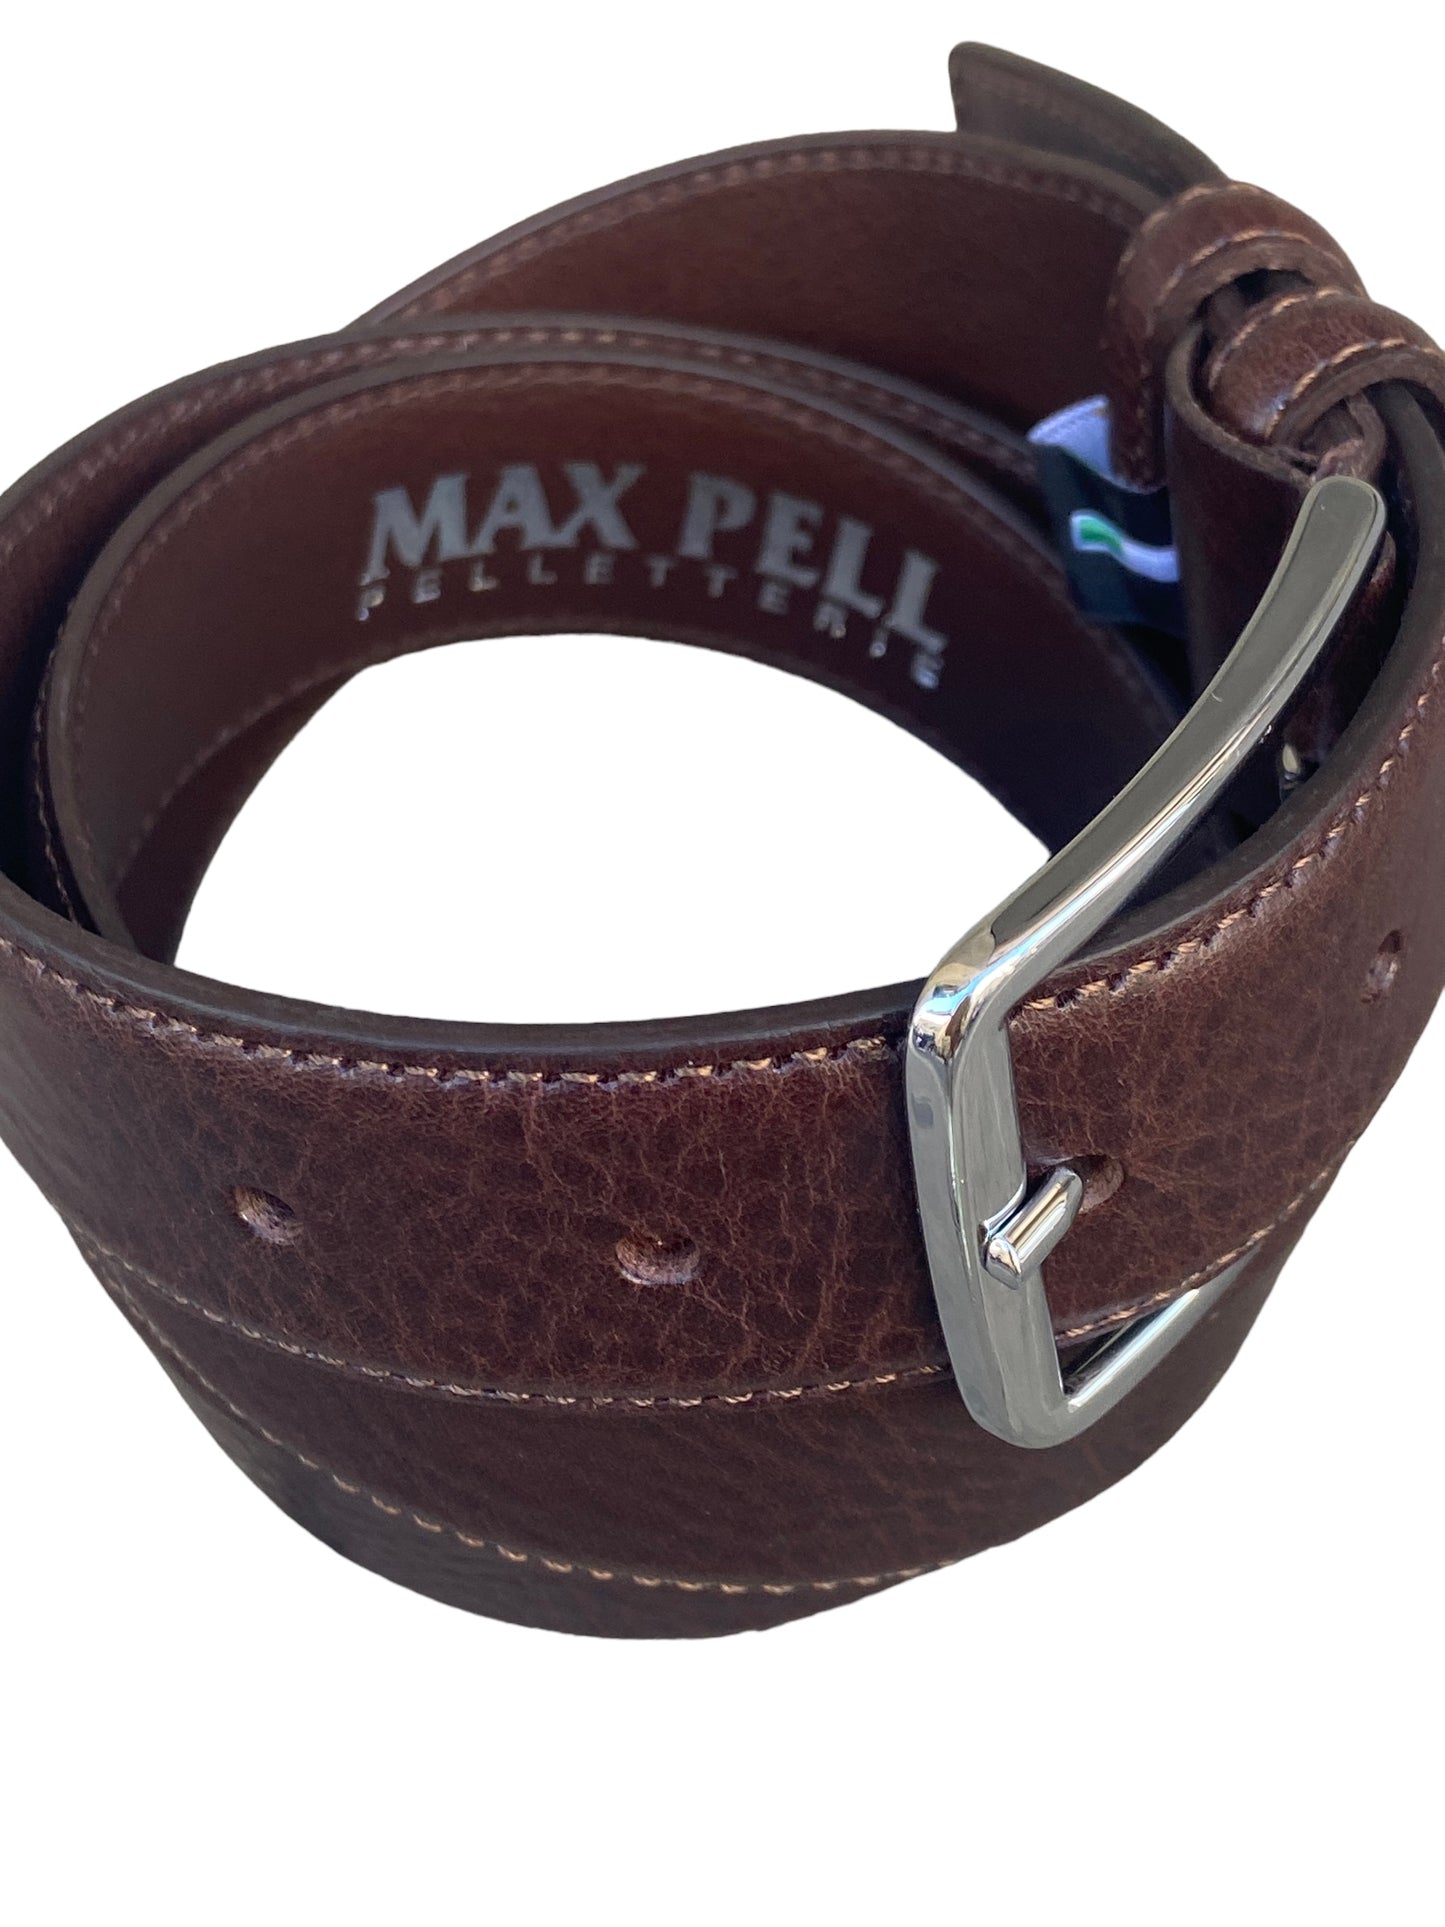 MAX PELL cintura classic